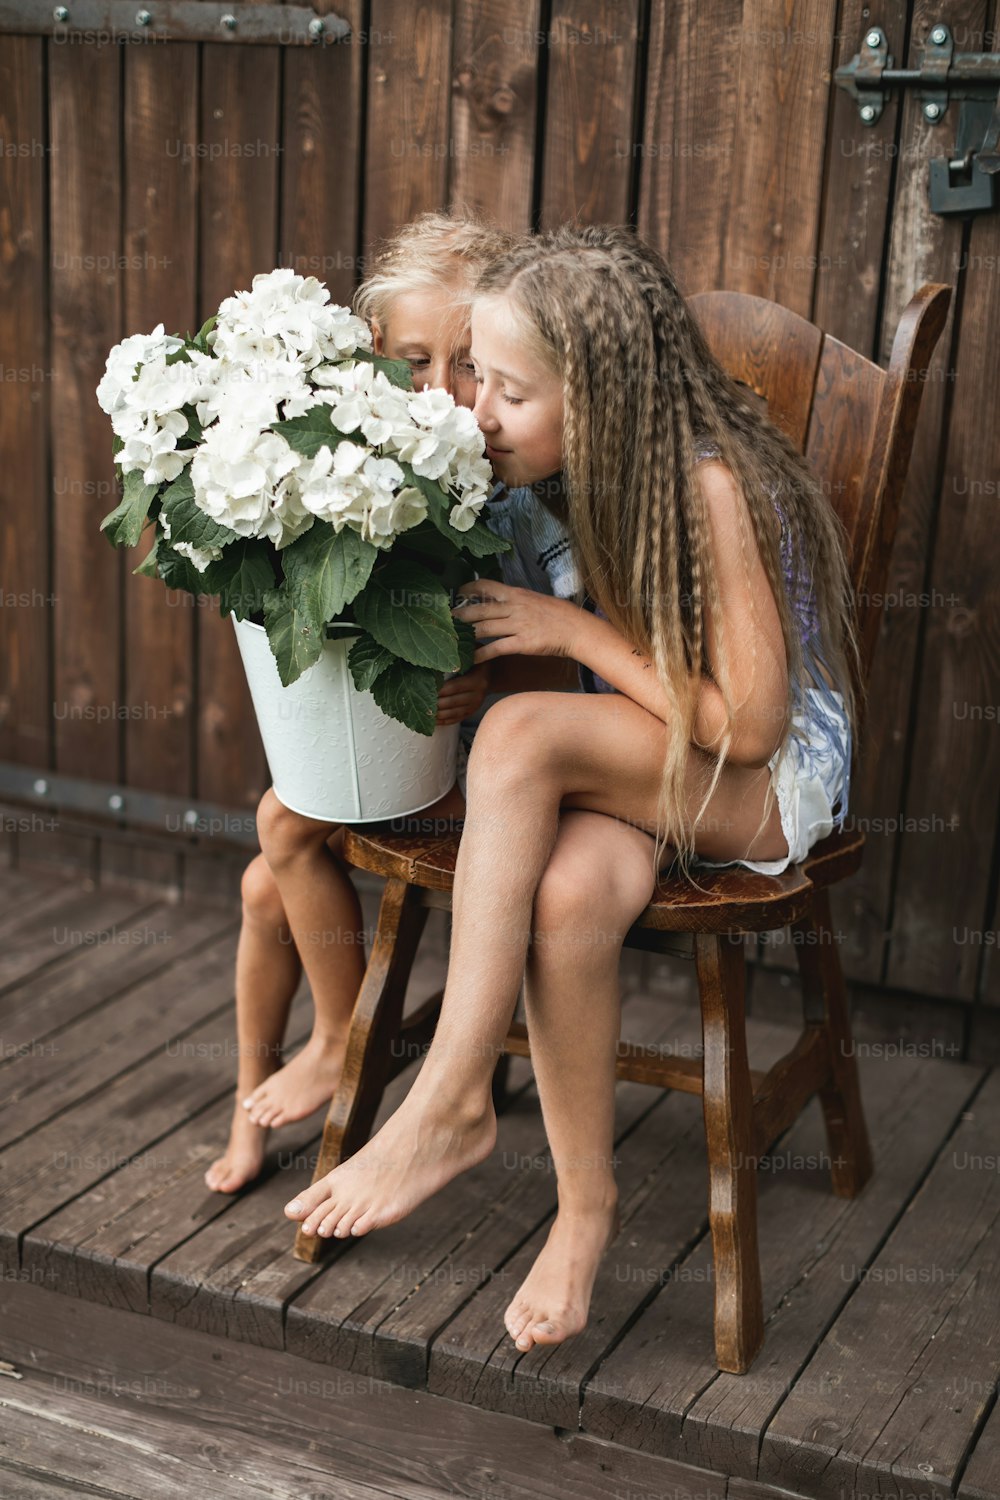 子供と花、夏、田舎、そして楽しみ。夏休み。木造の納屋の前の椅子に座り、大きな白いバケツでアジサイの花の匂いを嗅ぐ可愛らしい女の子が2人。